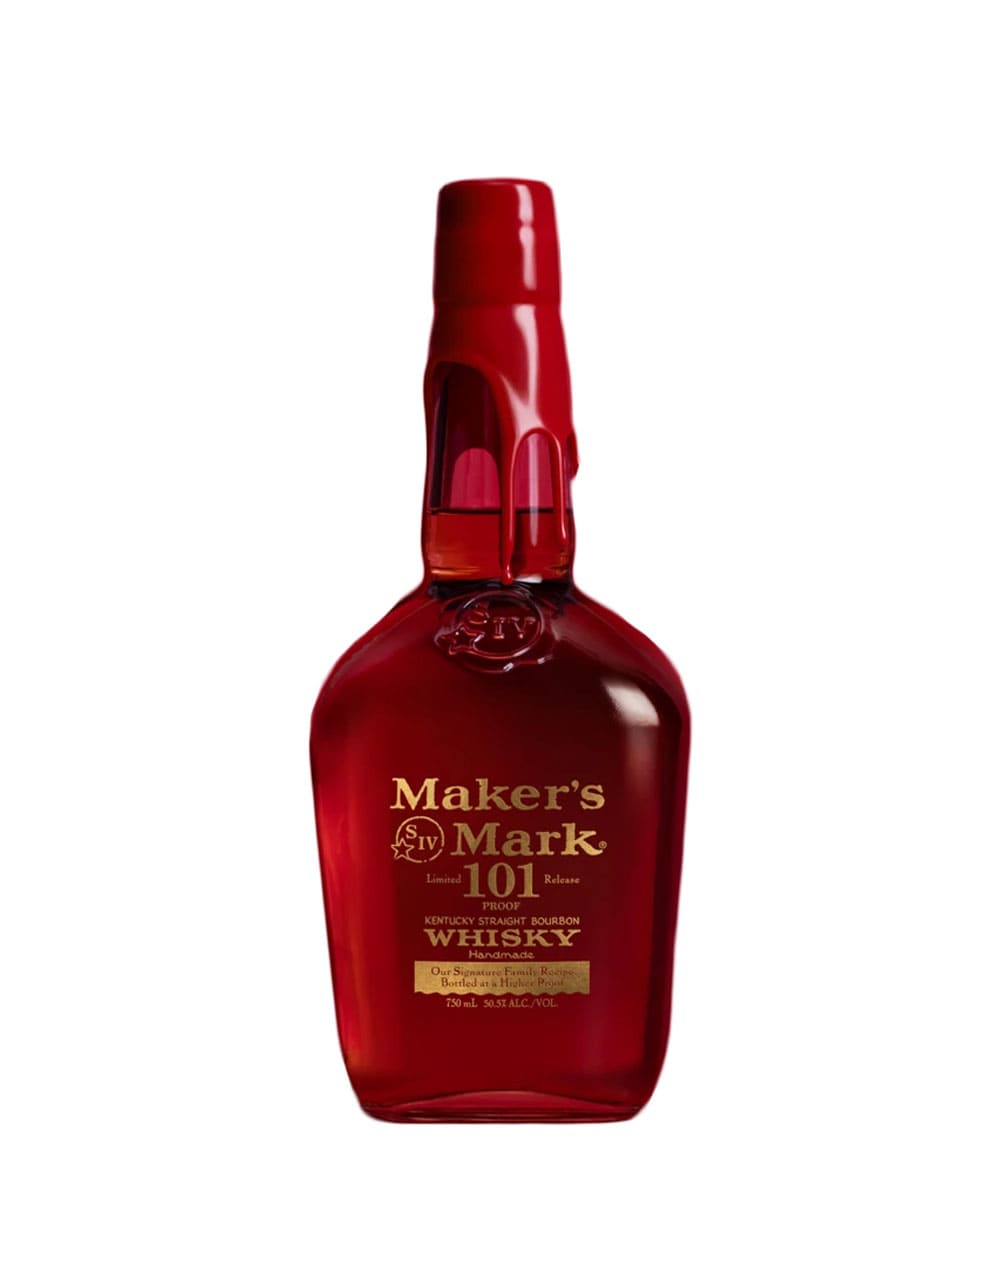 Maker's Mark 101 Proof Kentucky Straight Bourbon Whisky